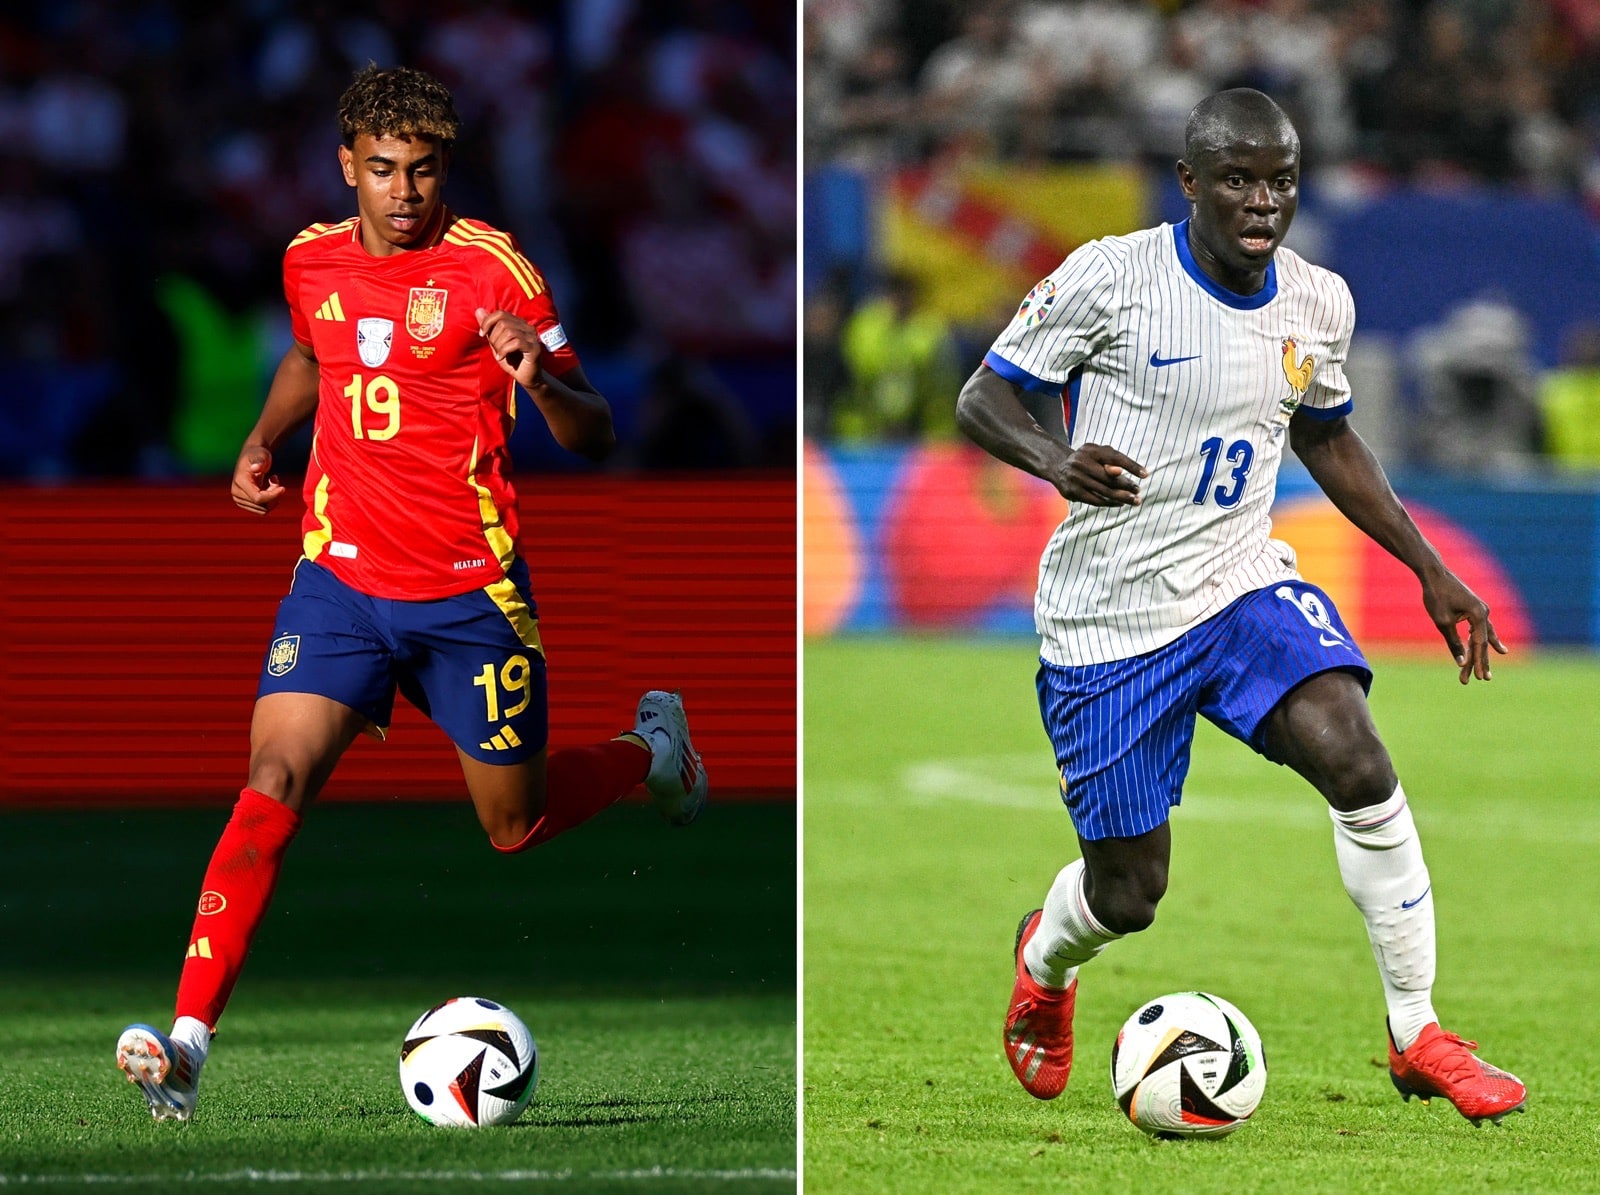 Spaniens #19 Lamine Yamal und Frankreichs #13 N’golo Kante – Spanien gegen Frankreich spielt das 1. Halbfinalspiel der UEFA Euro 2024 in München am 9. Juli 2024. (Foto: Odd ANDERSEN und Javier SORIANO / AFP)